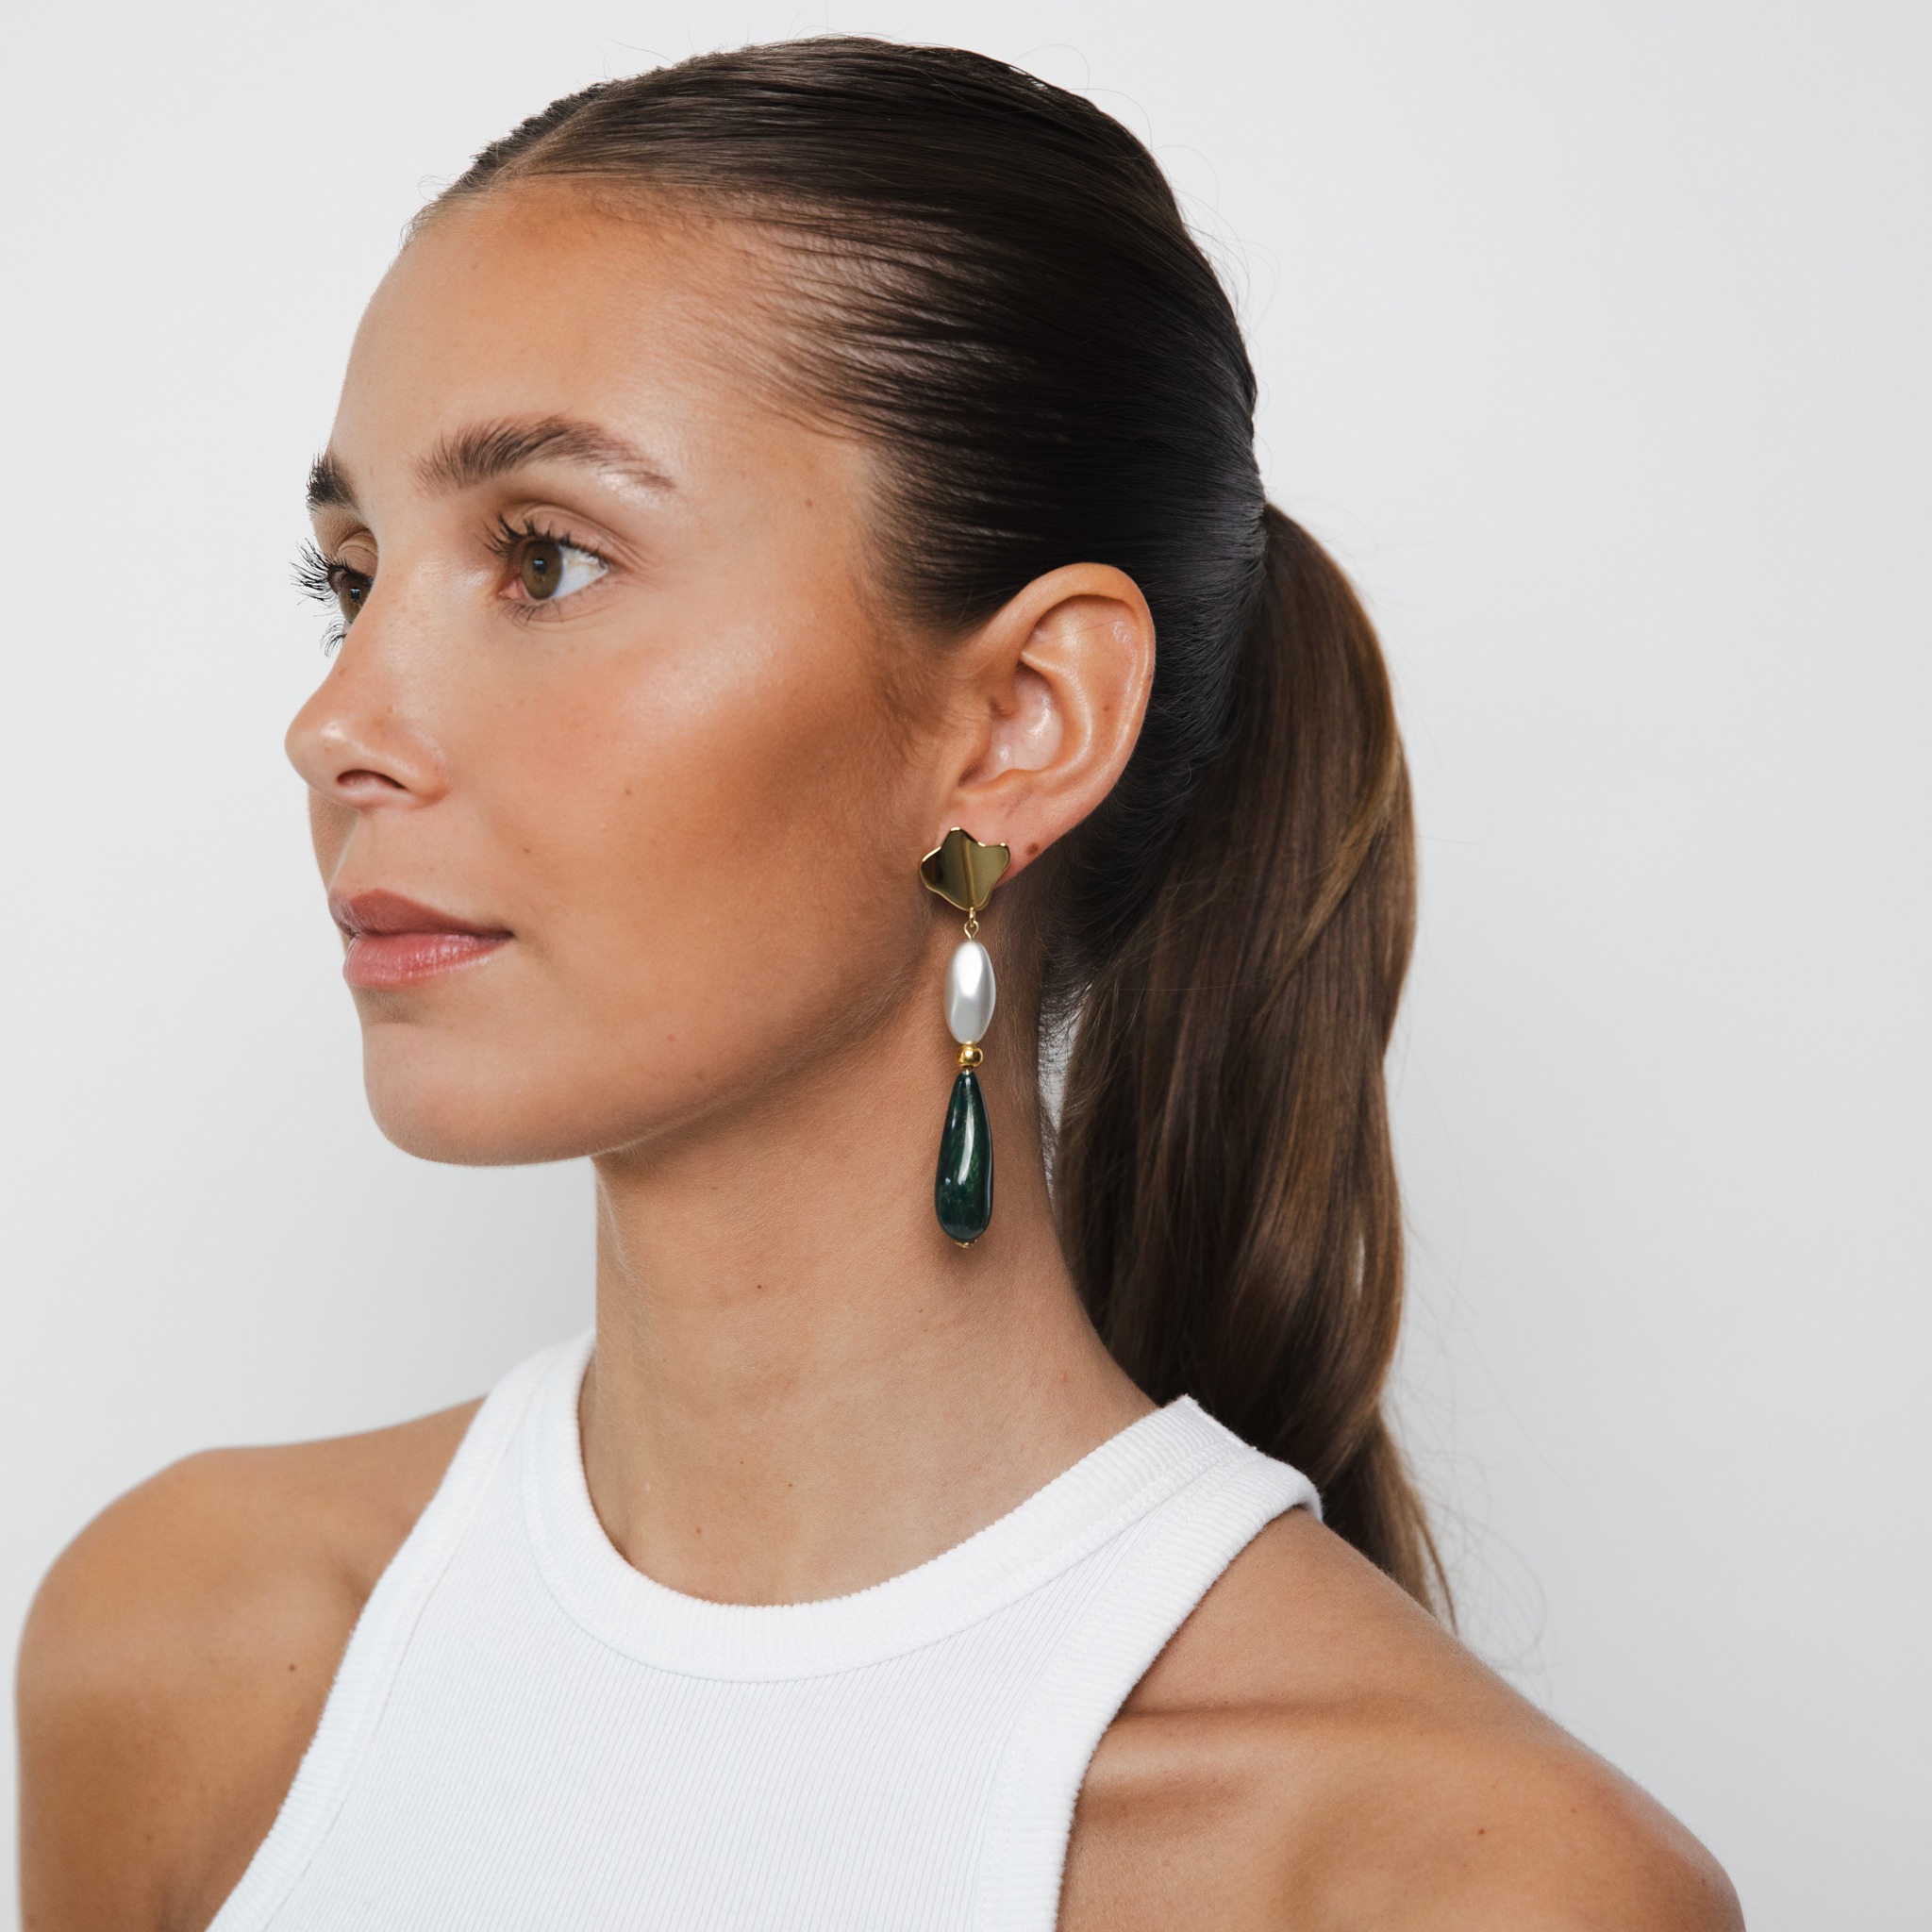 PERLA green long earrings